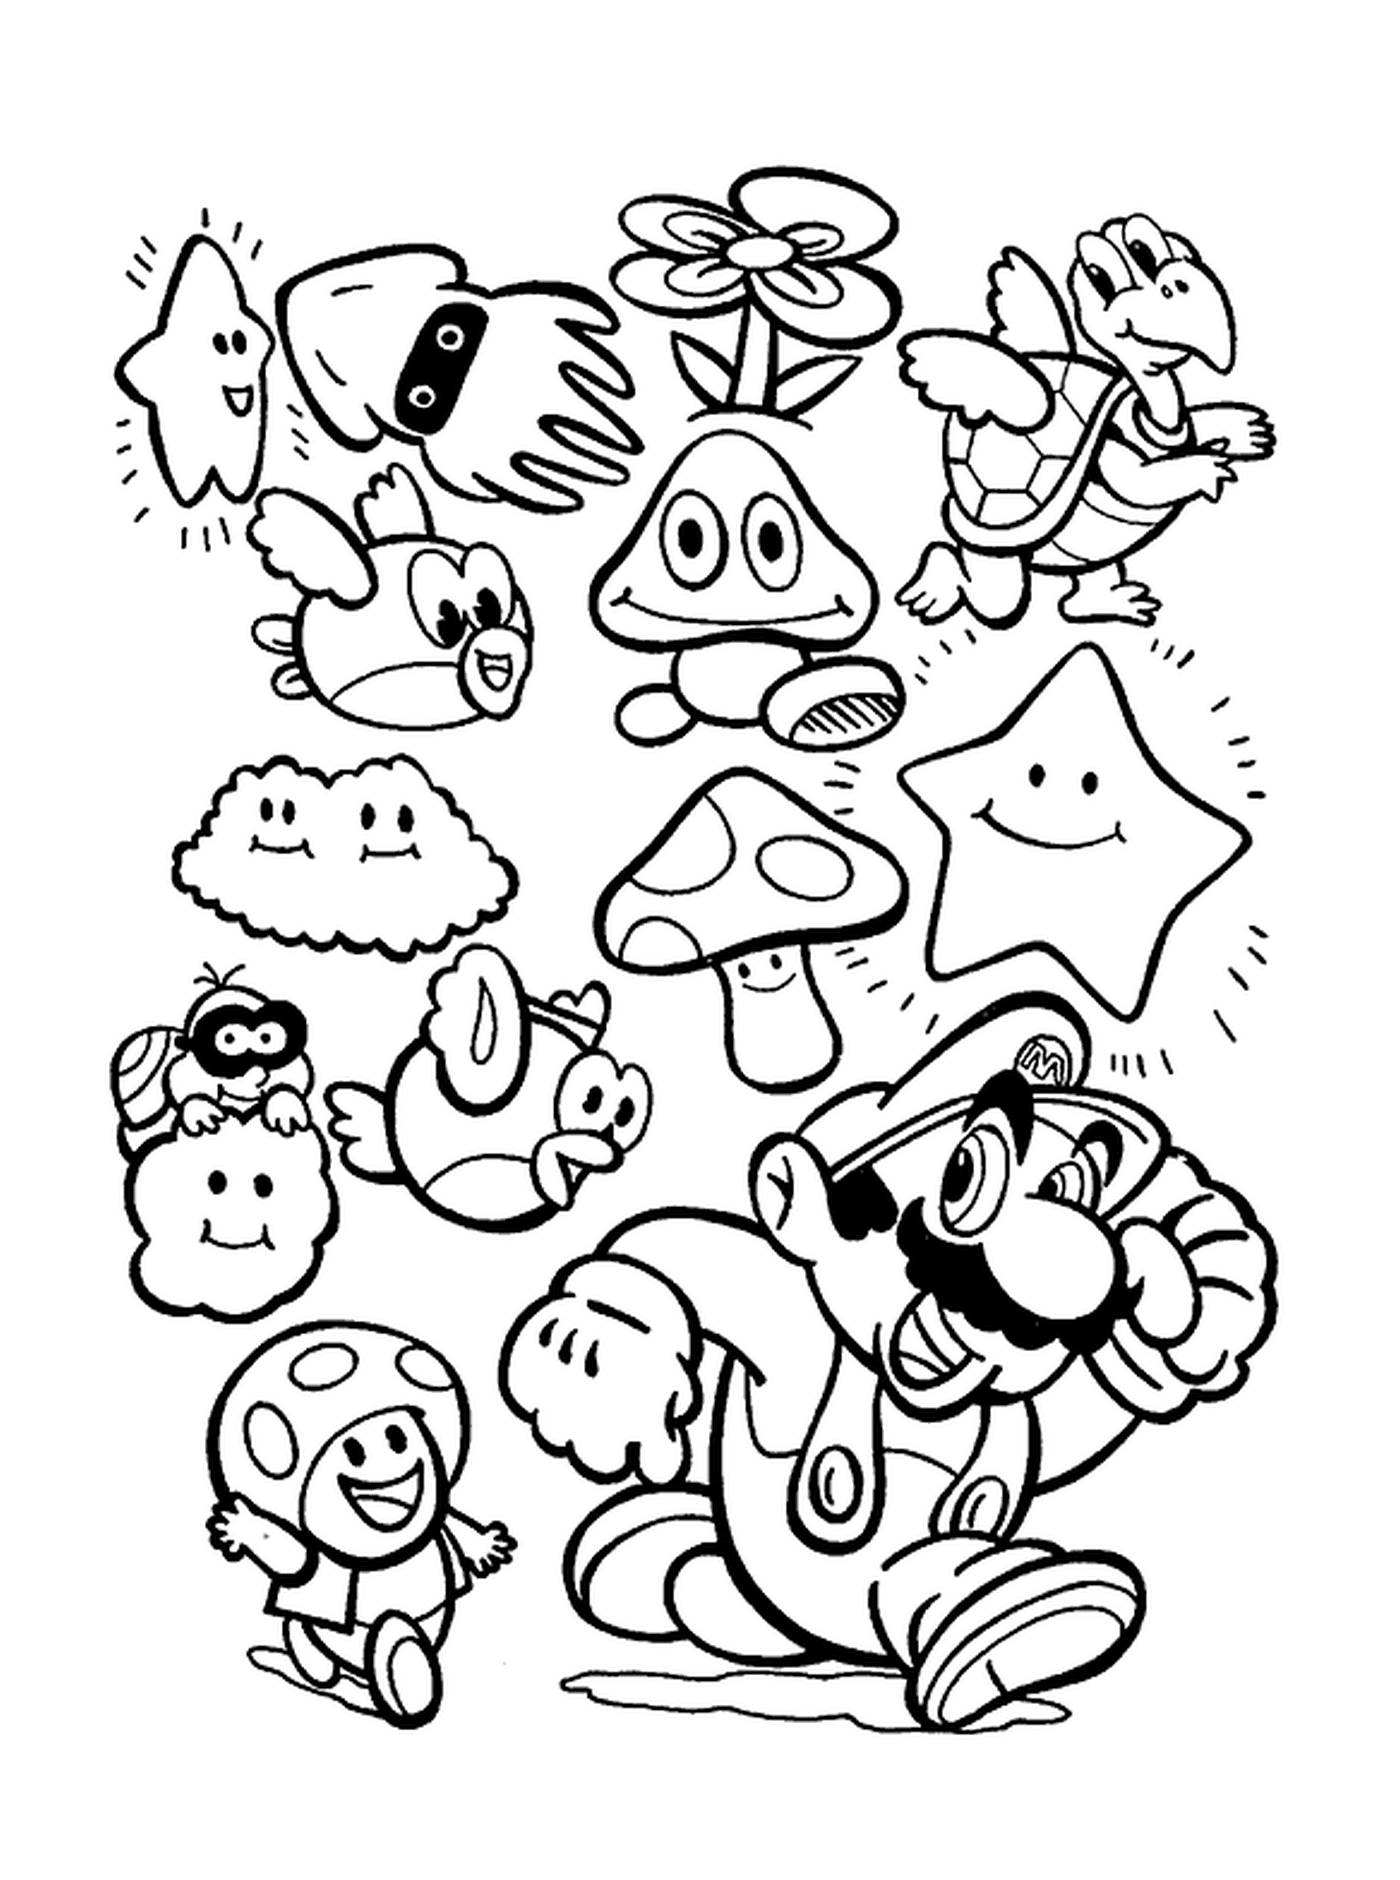  Los personajes de Mario se juntan 